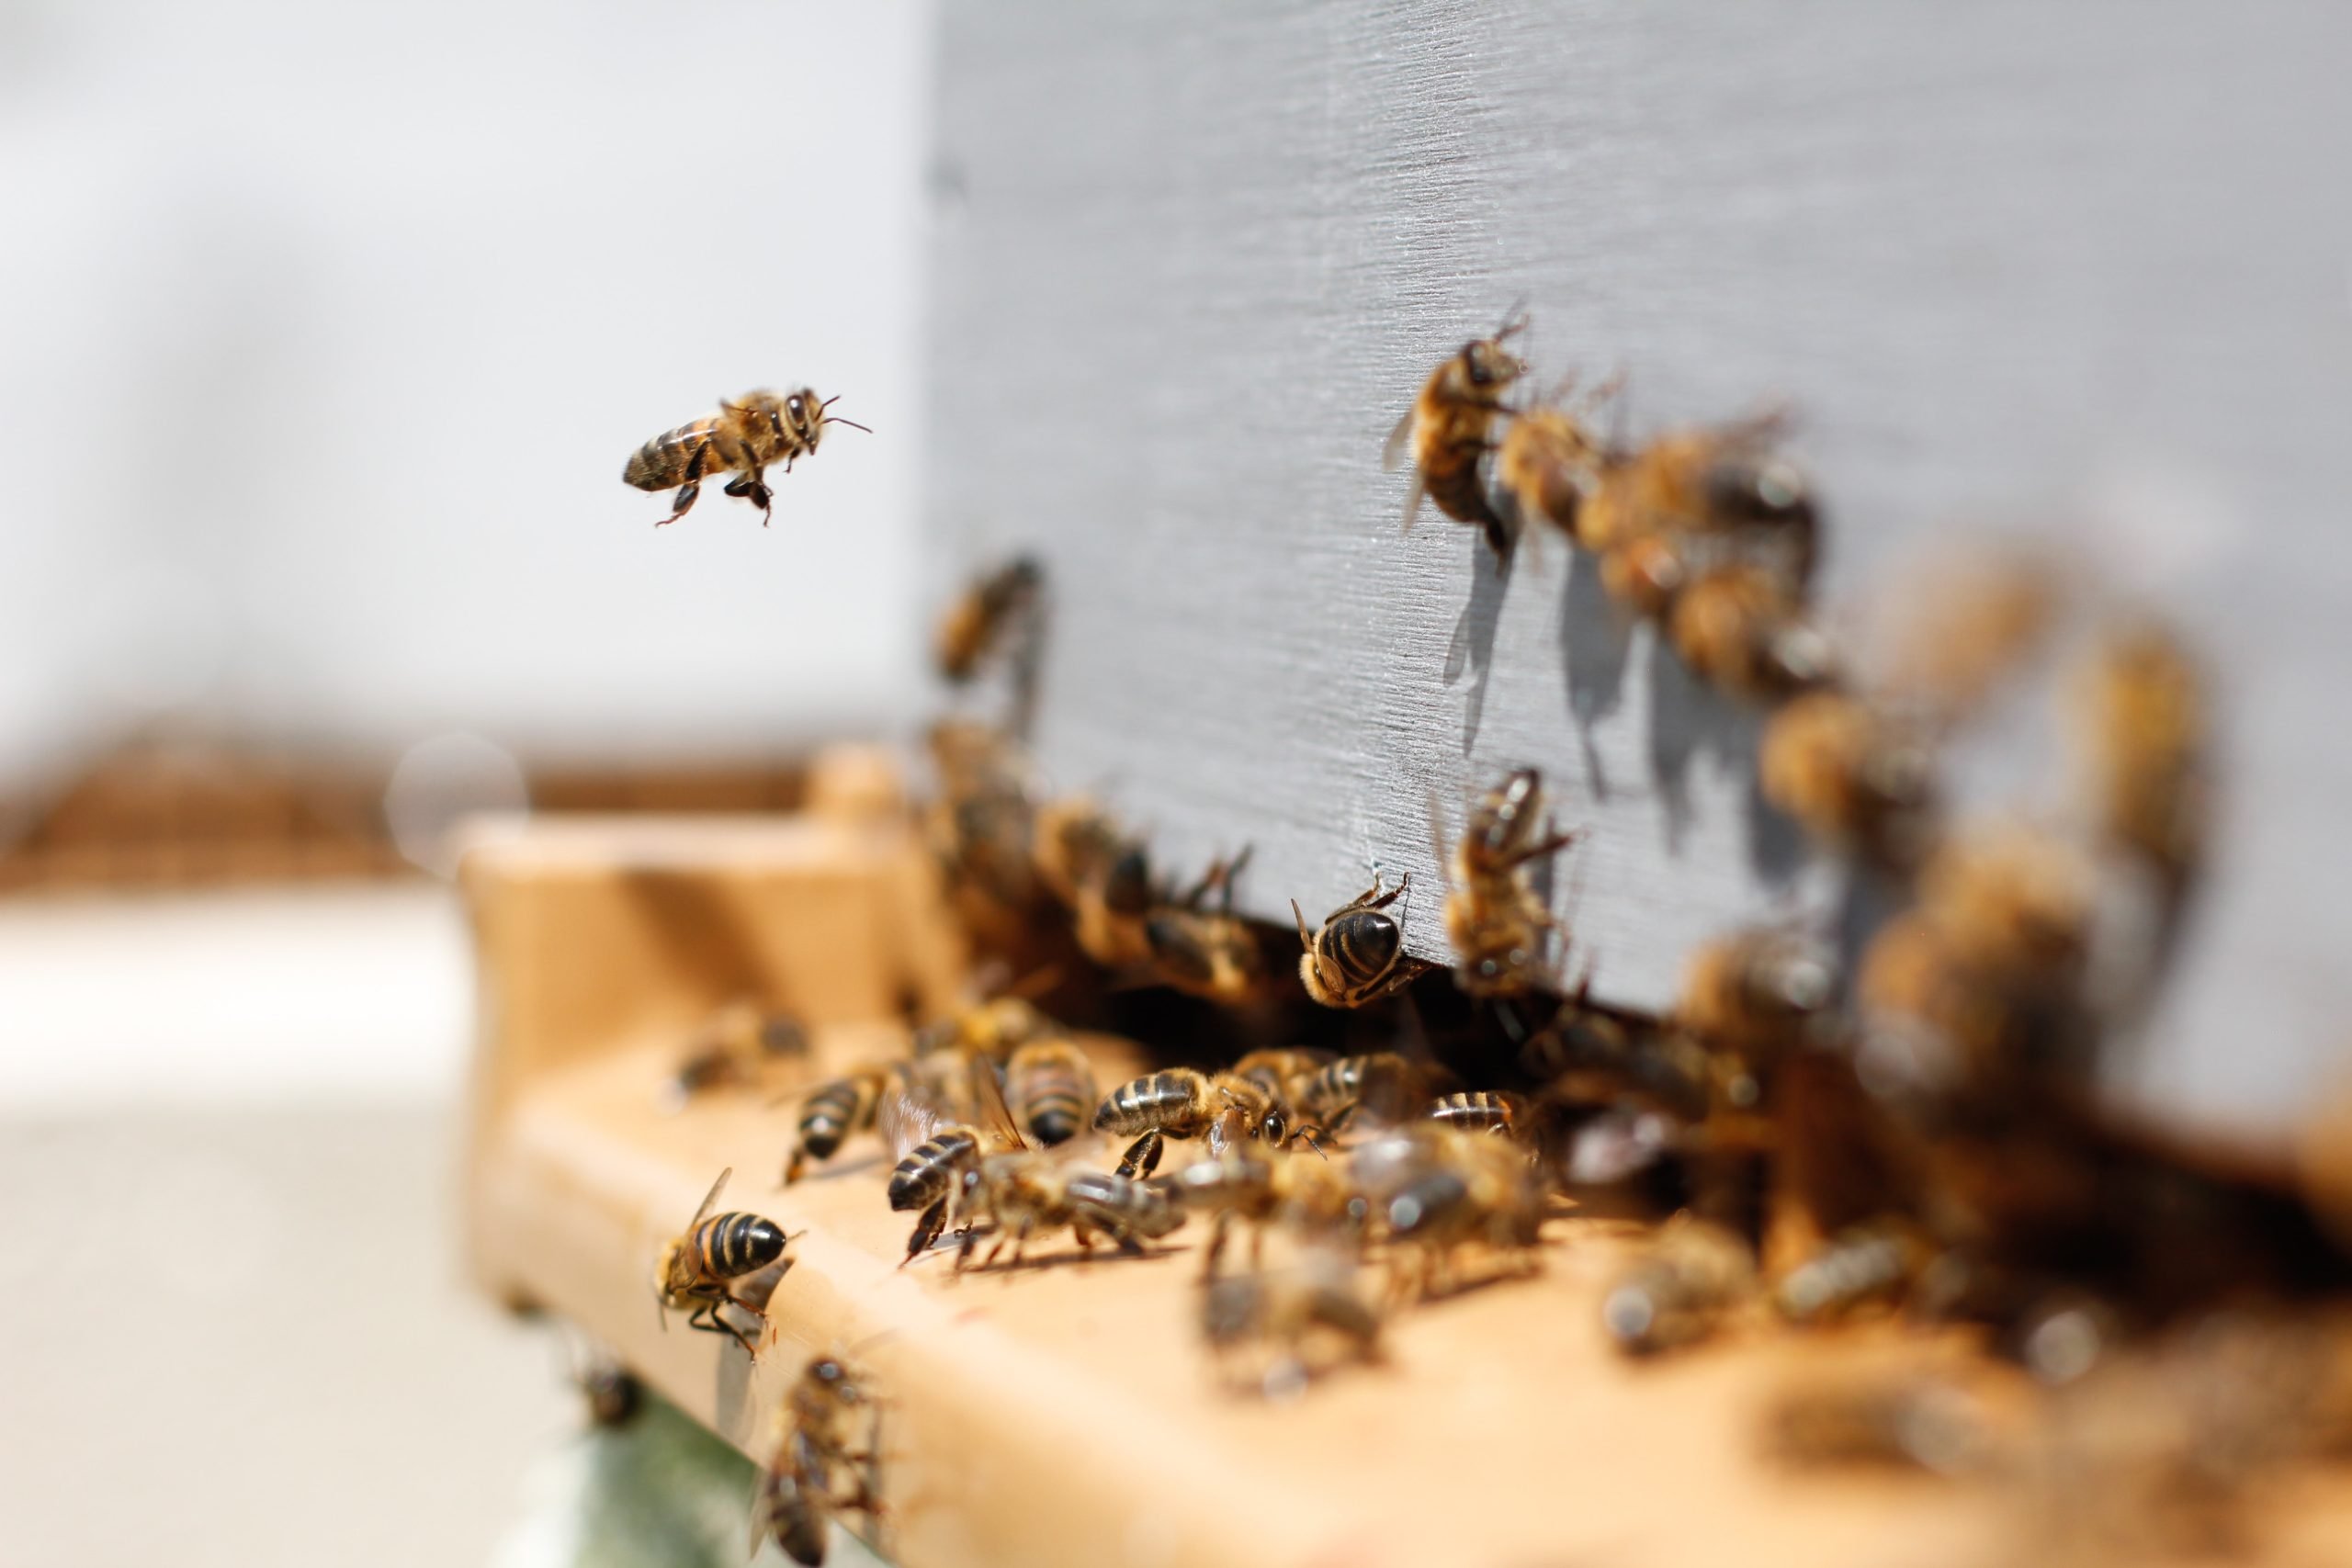 A Spinetta l’inquinamento sarà controllato dalle api: “Nelle arnie è possibile trovare oltre 1000 inquinanti”